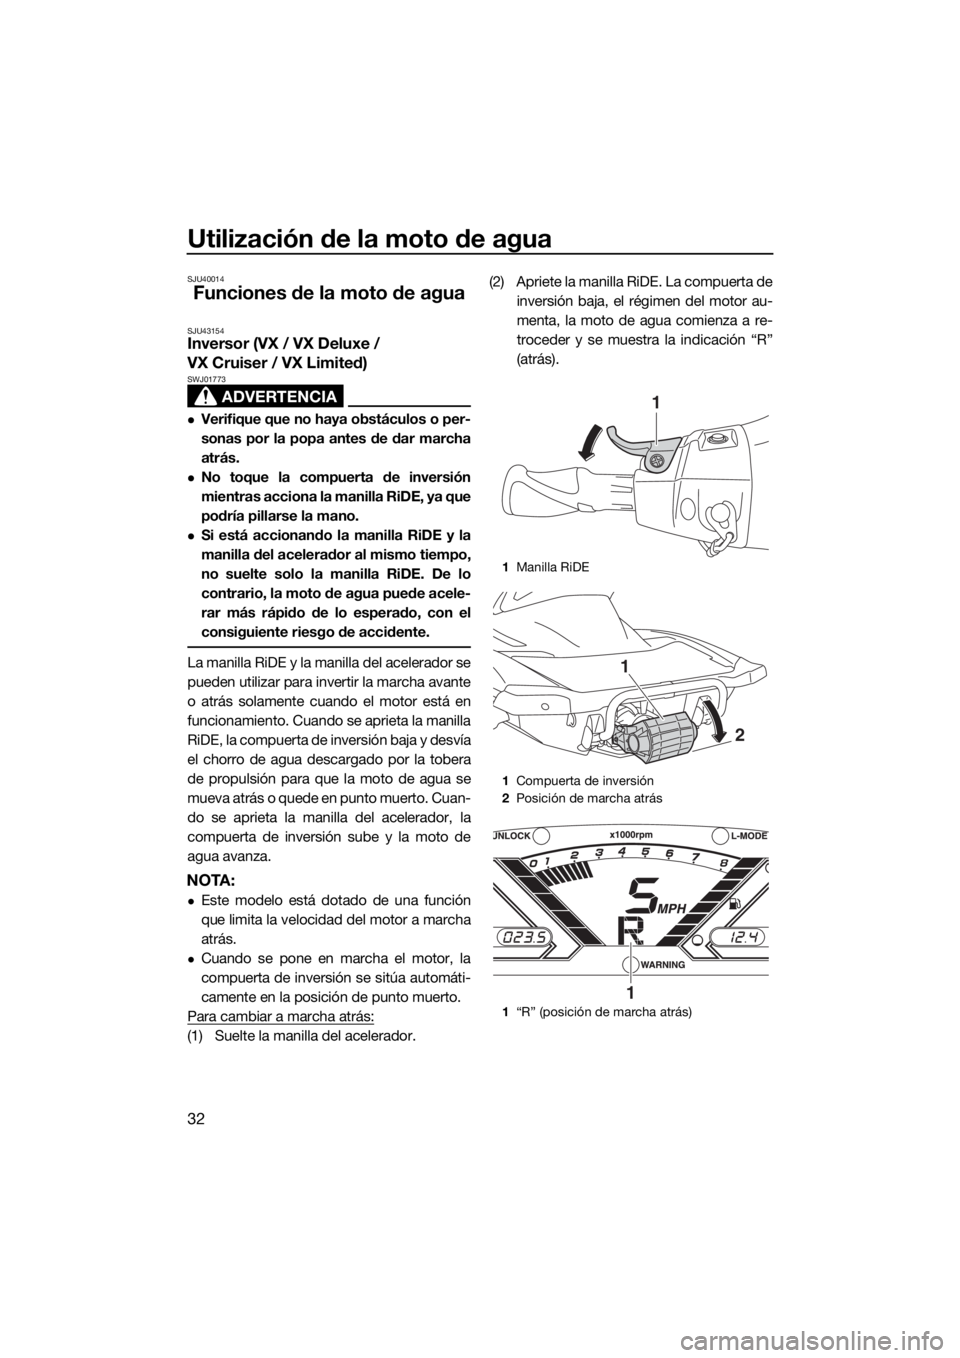 YAMAHA VX LIMITED 2019  Manuale de Empleo (in Spanish) Utilización de la moto de agua
32
SJU40014
Funciones de la moto de agua
SJU43154Inversor (VX / VX Deluxe / 
VX Cruiser / VX Limited)
ADVERTENCIA
SWJ01773
Verifique que no haya obstáculos o per-
s